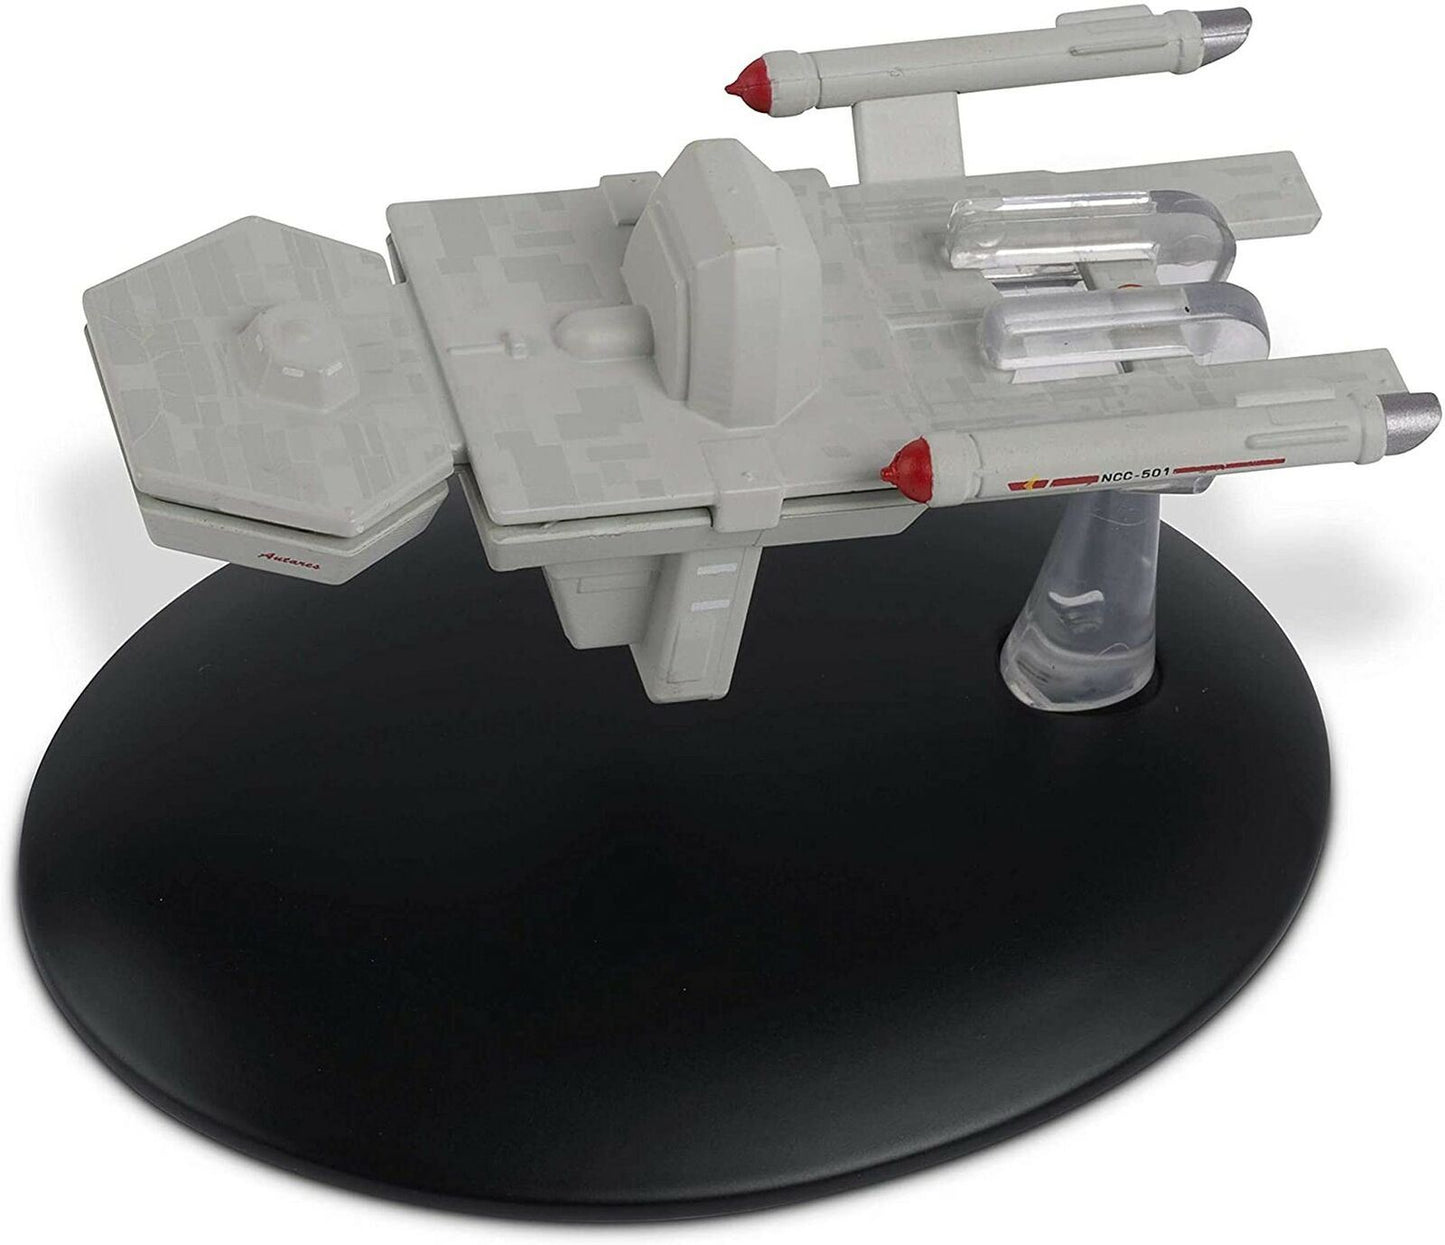 #63 Antares NCC-501 Starship Die-Cast Model (Eaglemoss / Star Trek)